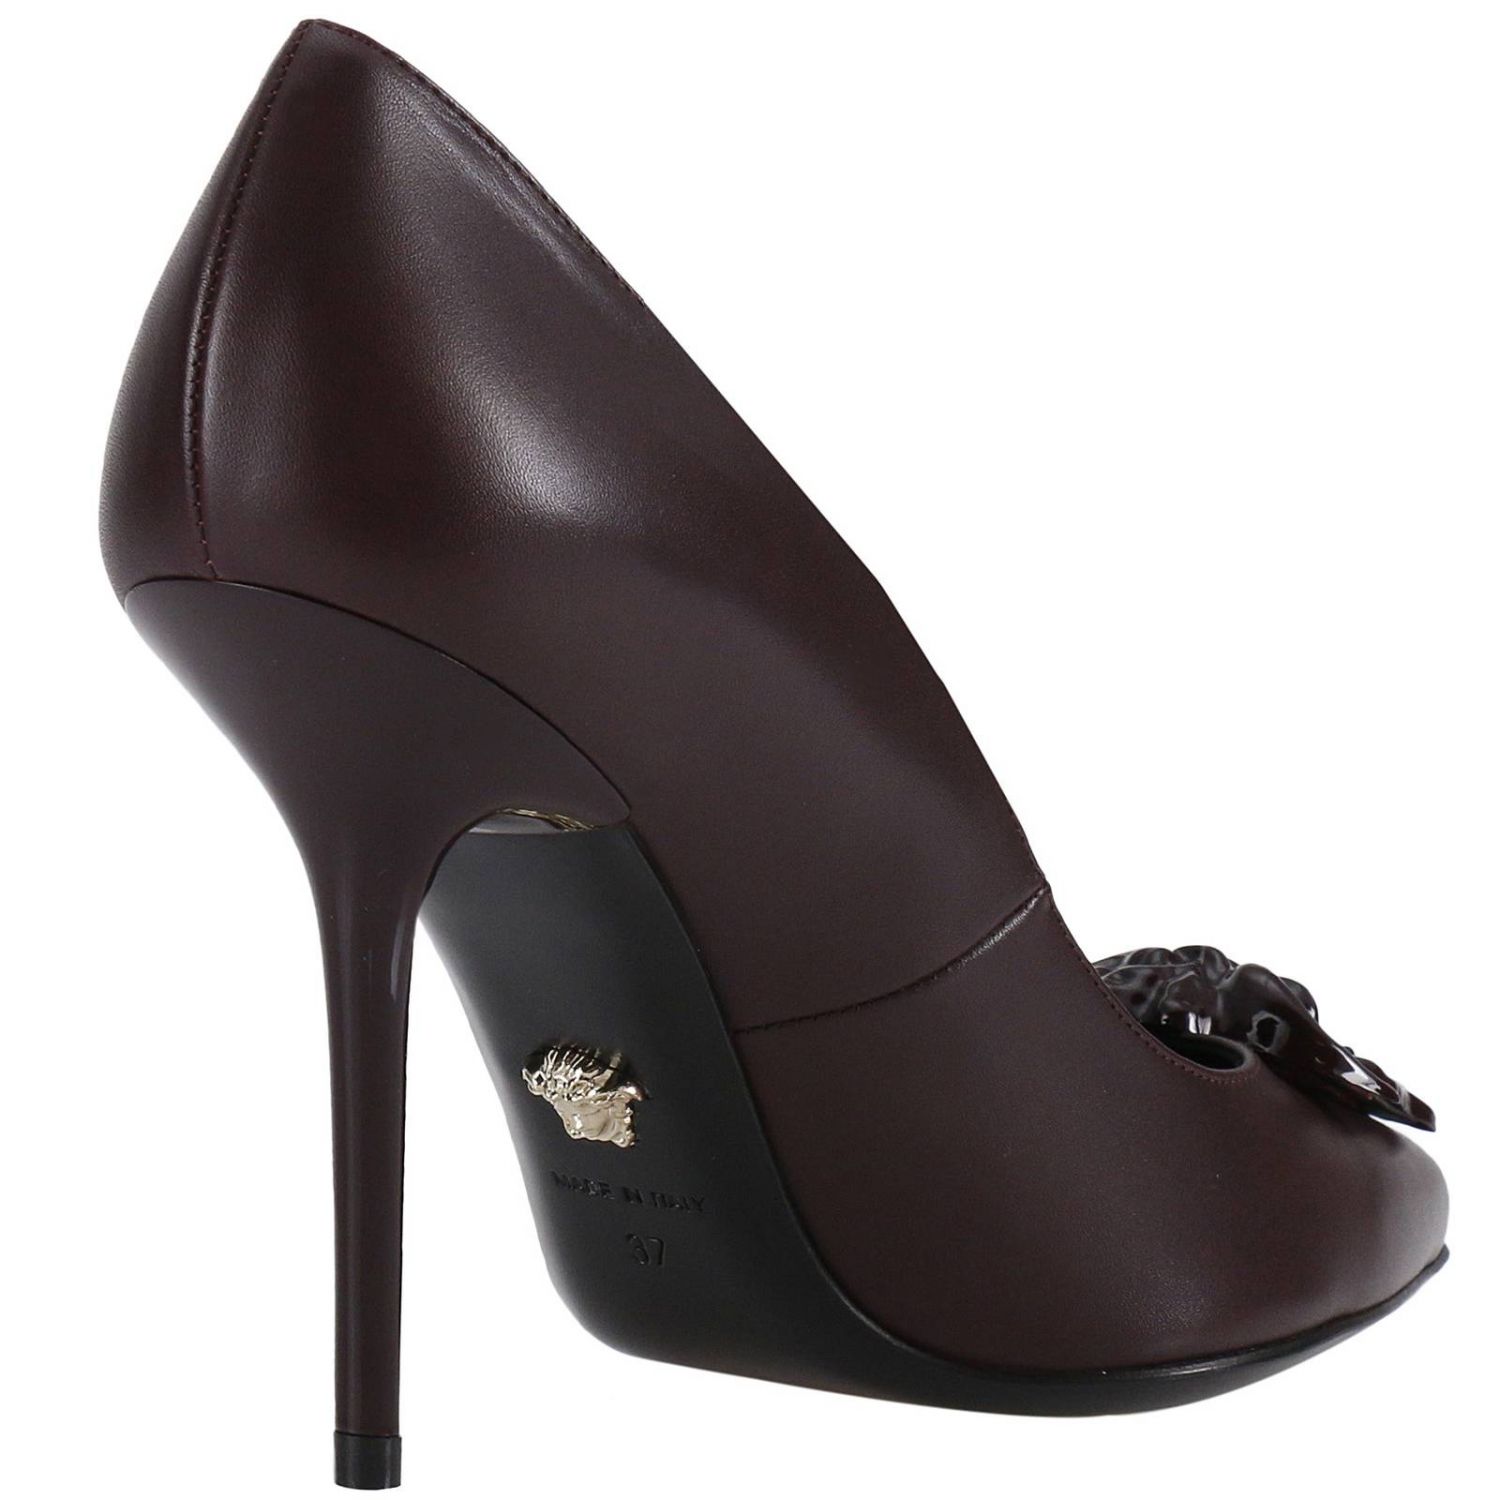 Versace Outlet: Shoes women | Pumps Versace Women Burgundy | Pumps ...